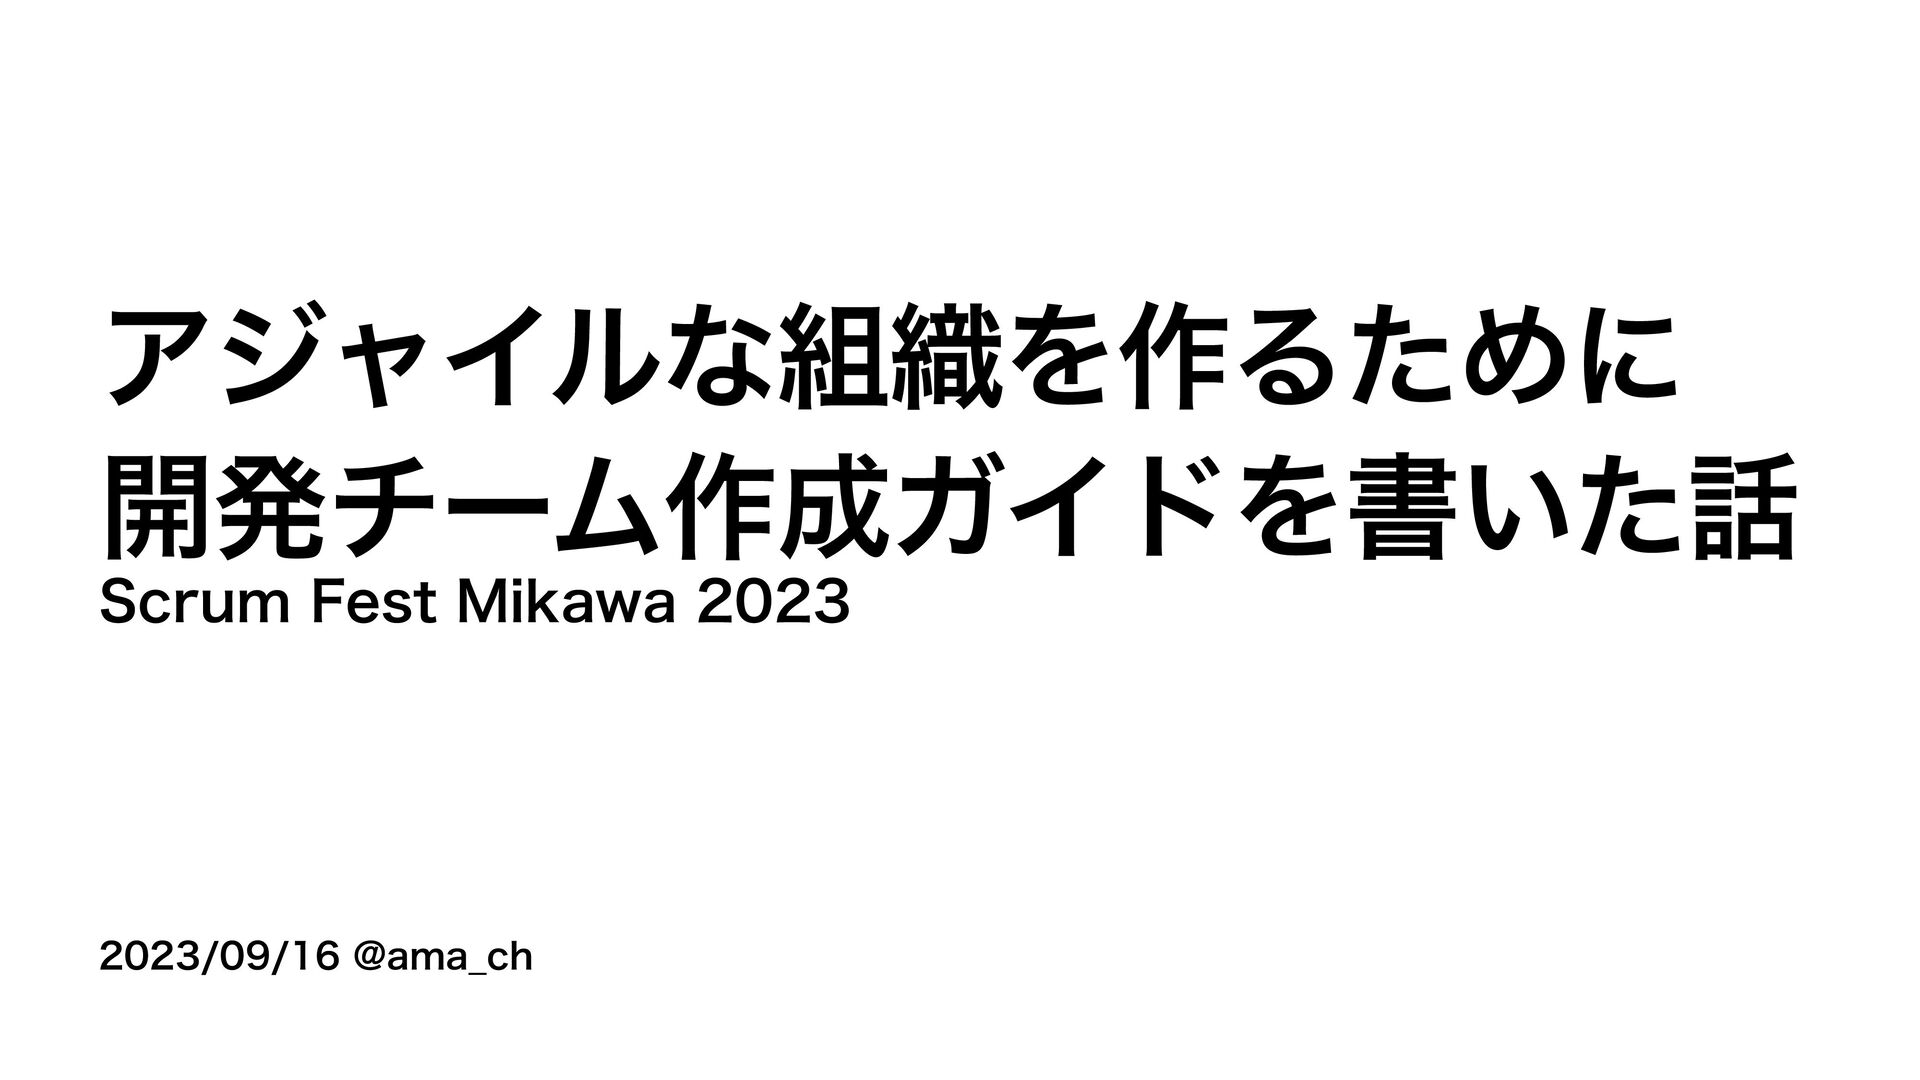 Slide Top: アジャイルな組織を作るために開発チーム作成ガイドを書いた話 / Scrum Fest Mikawa 2023